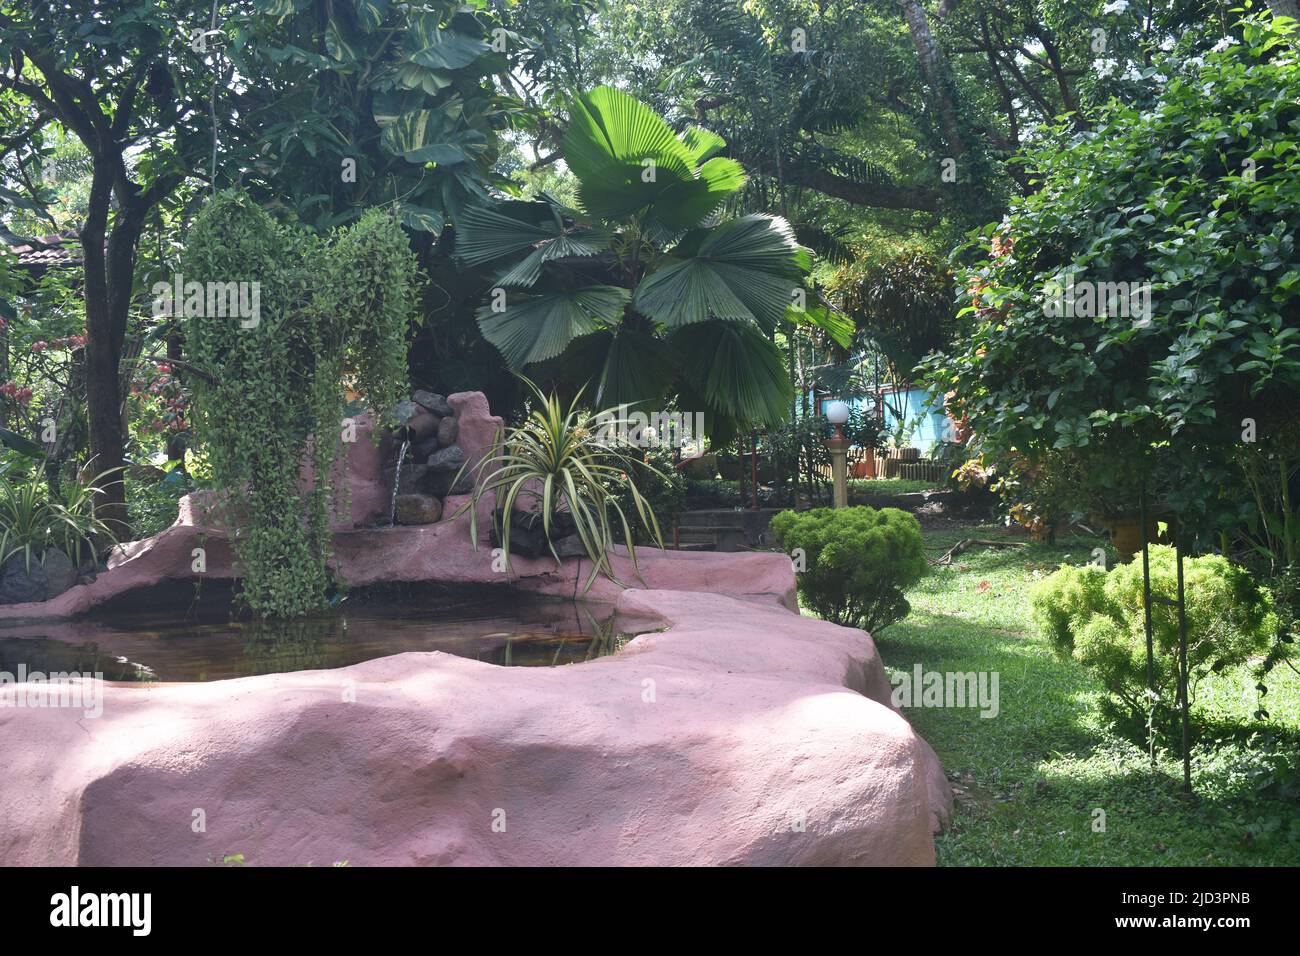 Un jardin paysagé avec des plantes, des fleurs, des arbres fruitiers, des étangs, des fontaines, Statues bouddhistes, bancs de jardin et bien d'autres pour un moment de détente dans un spa Ayurveda. Colombo. Sri Lanka. Banque D'Images